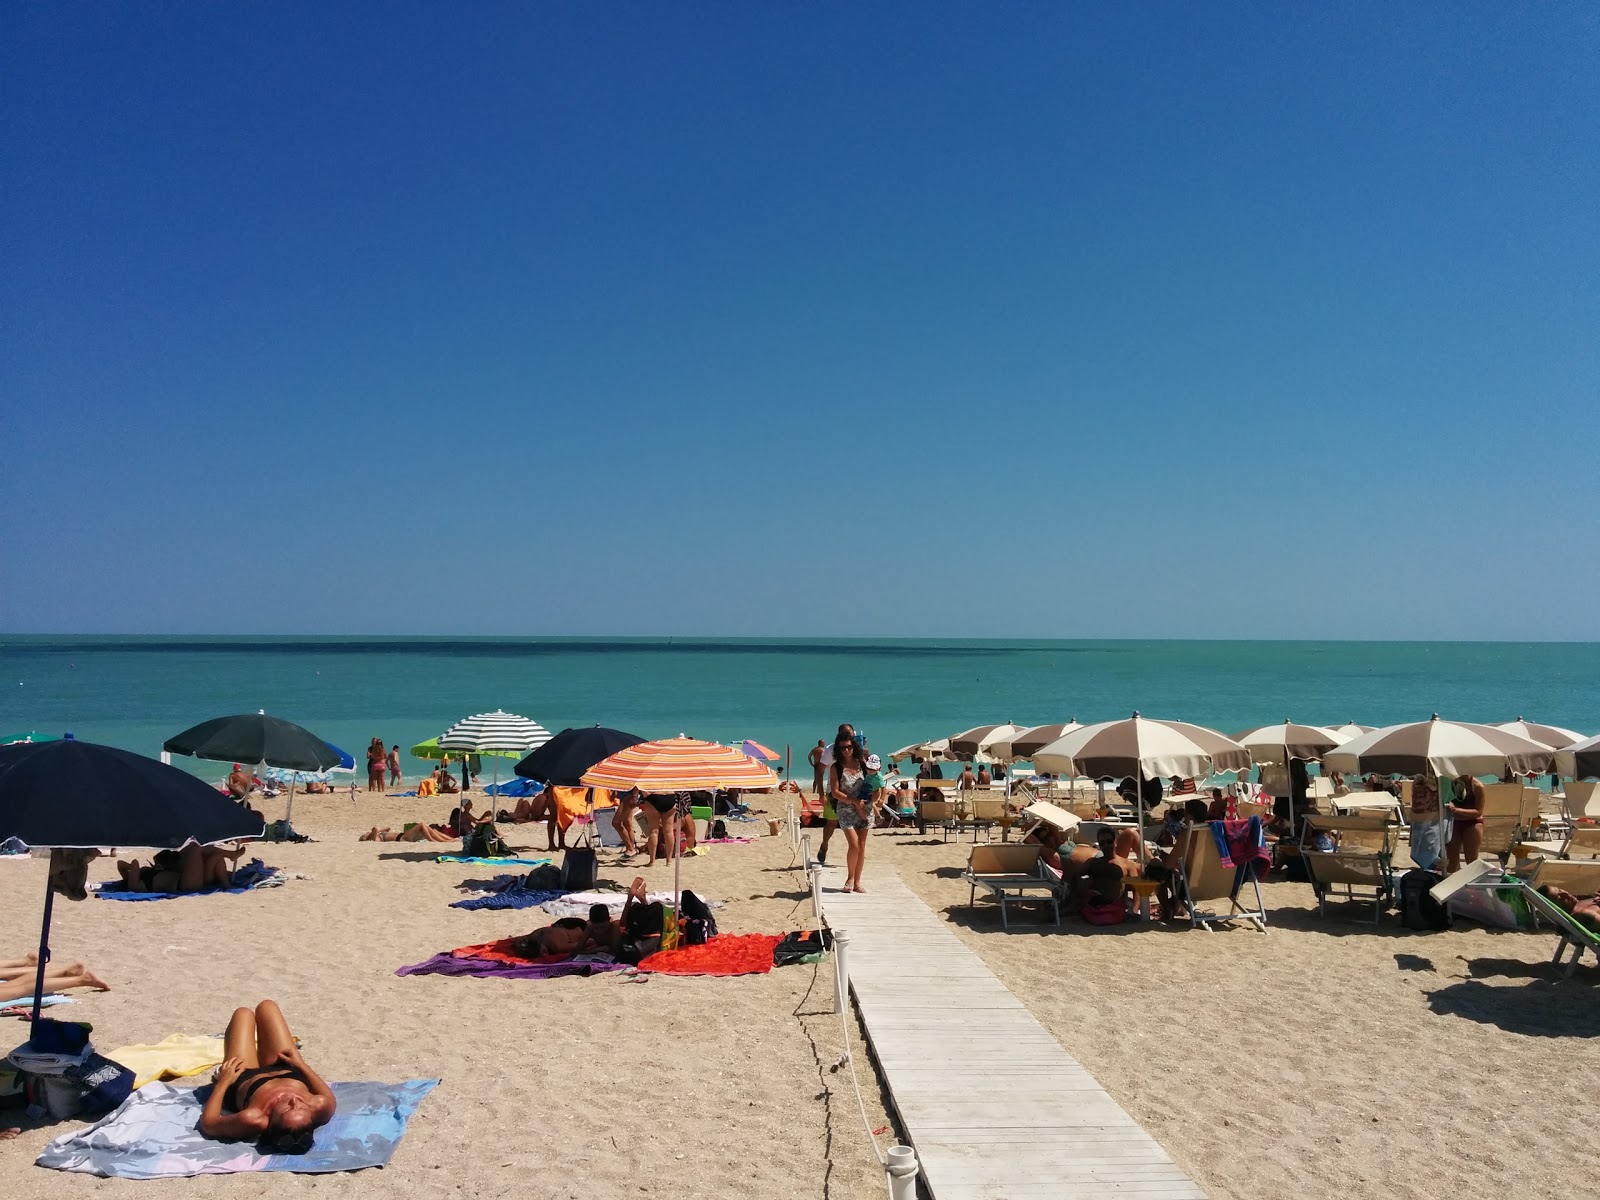 Spiaggia Libera Marcelli'in fotoğrafı plaj tatil beldesi alanı